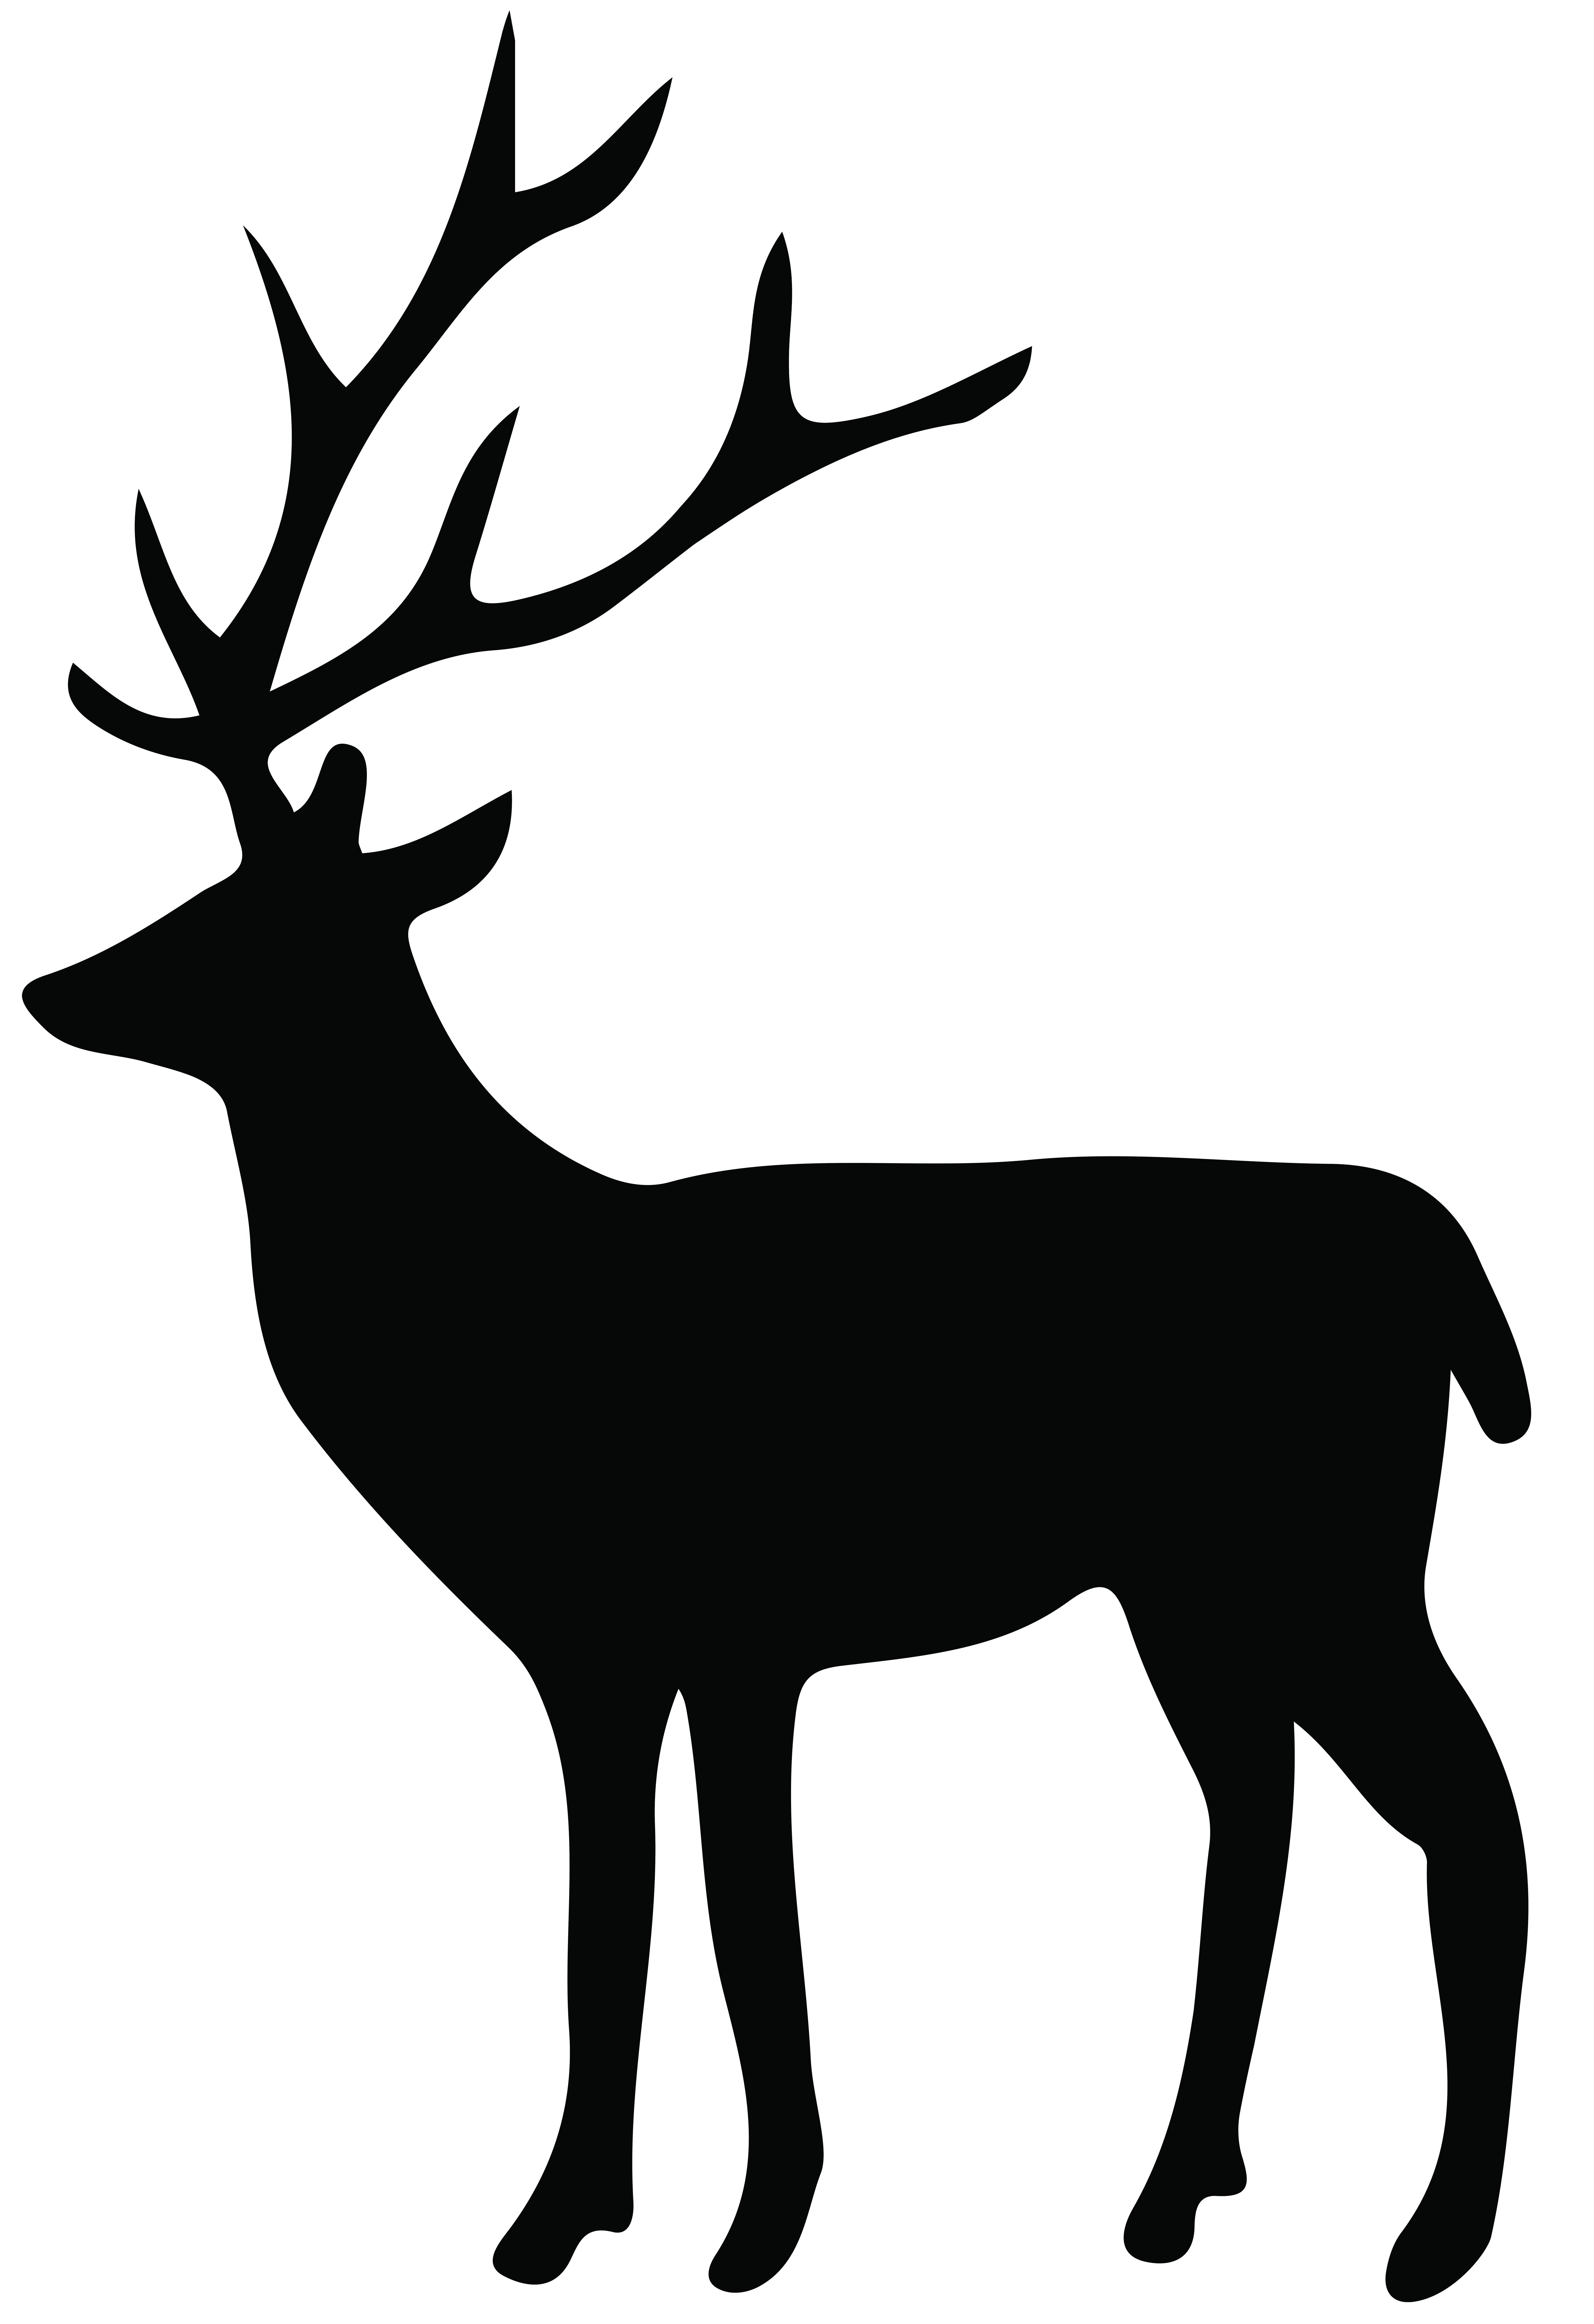 Mule Deer Silhouette at GetDrawings Free download